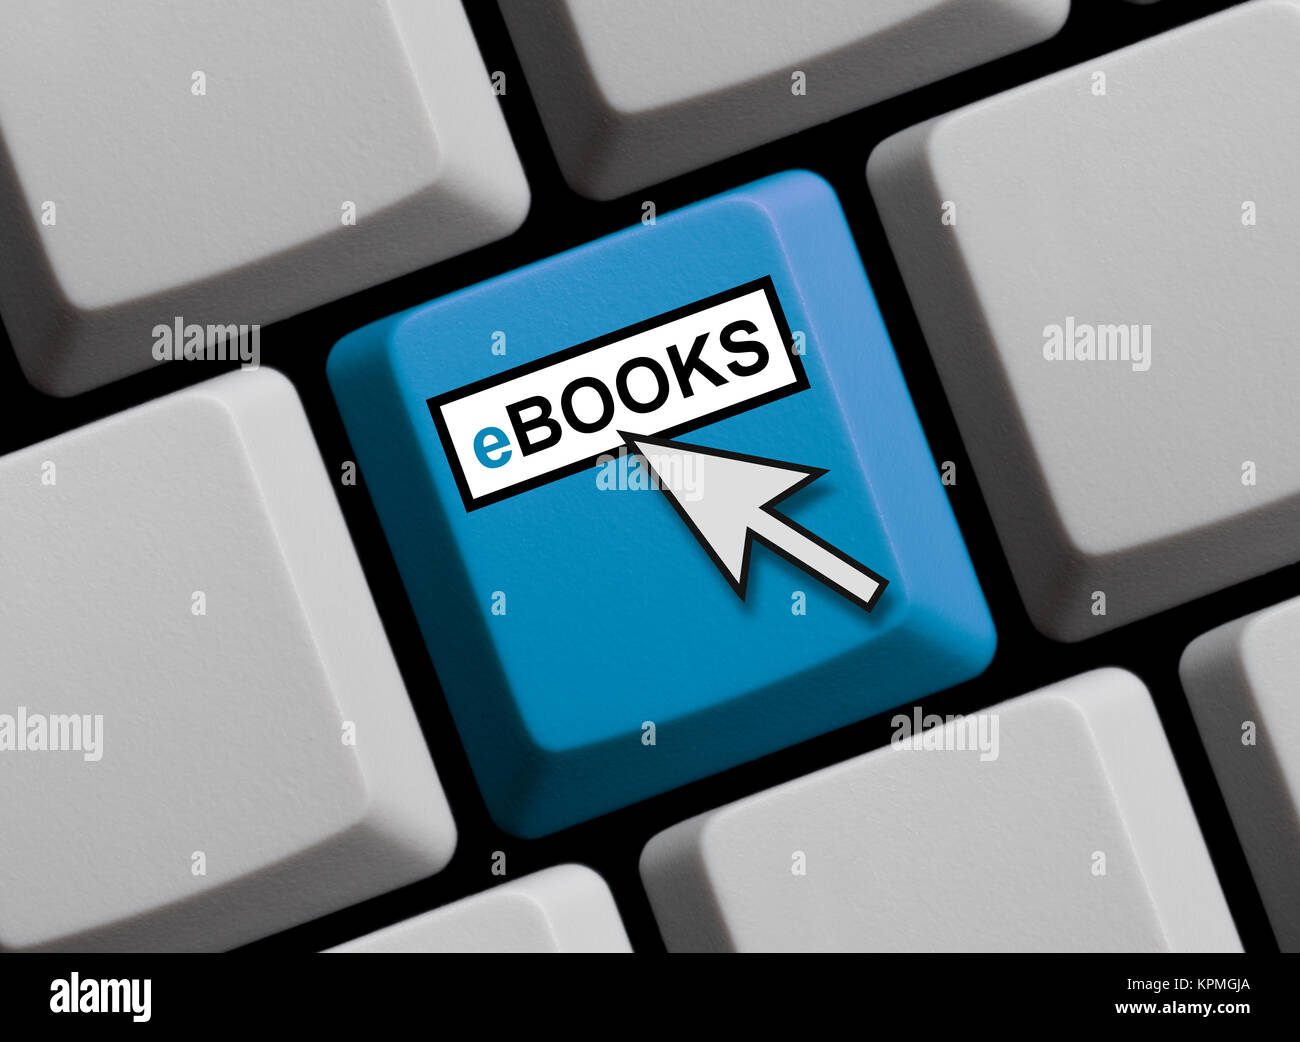 Farbige Taste einer Computer Tastatur mit Mauspfeil zeigt eBooks Stock Photo